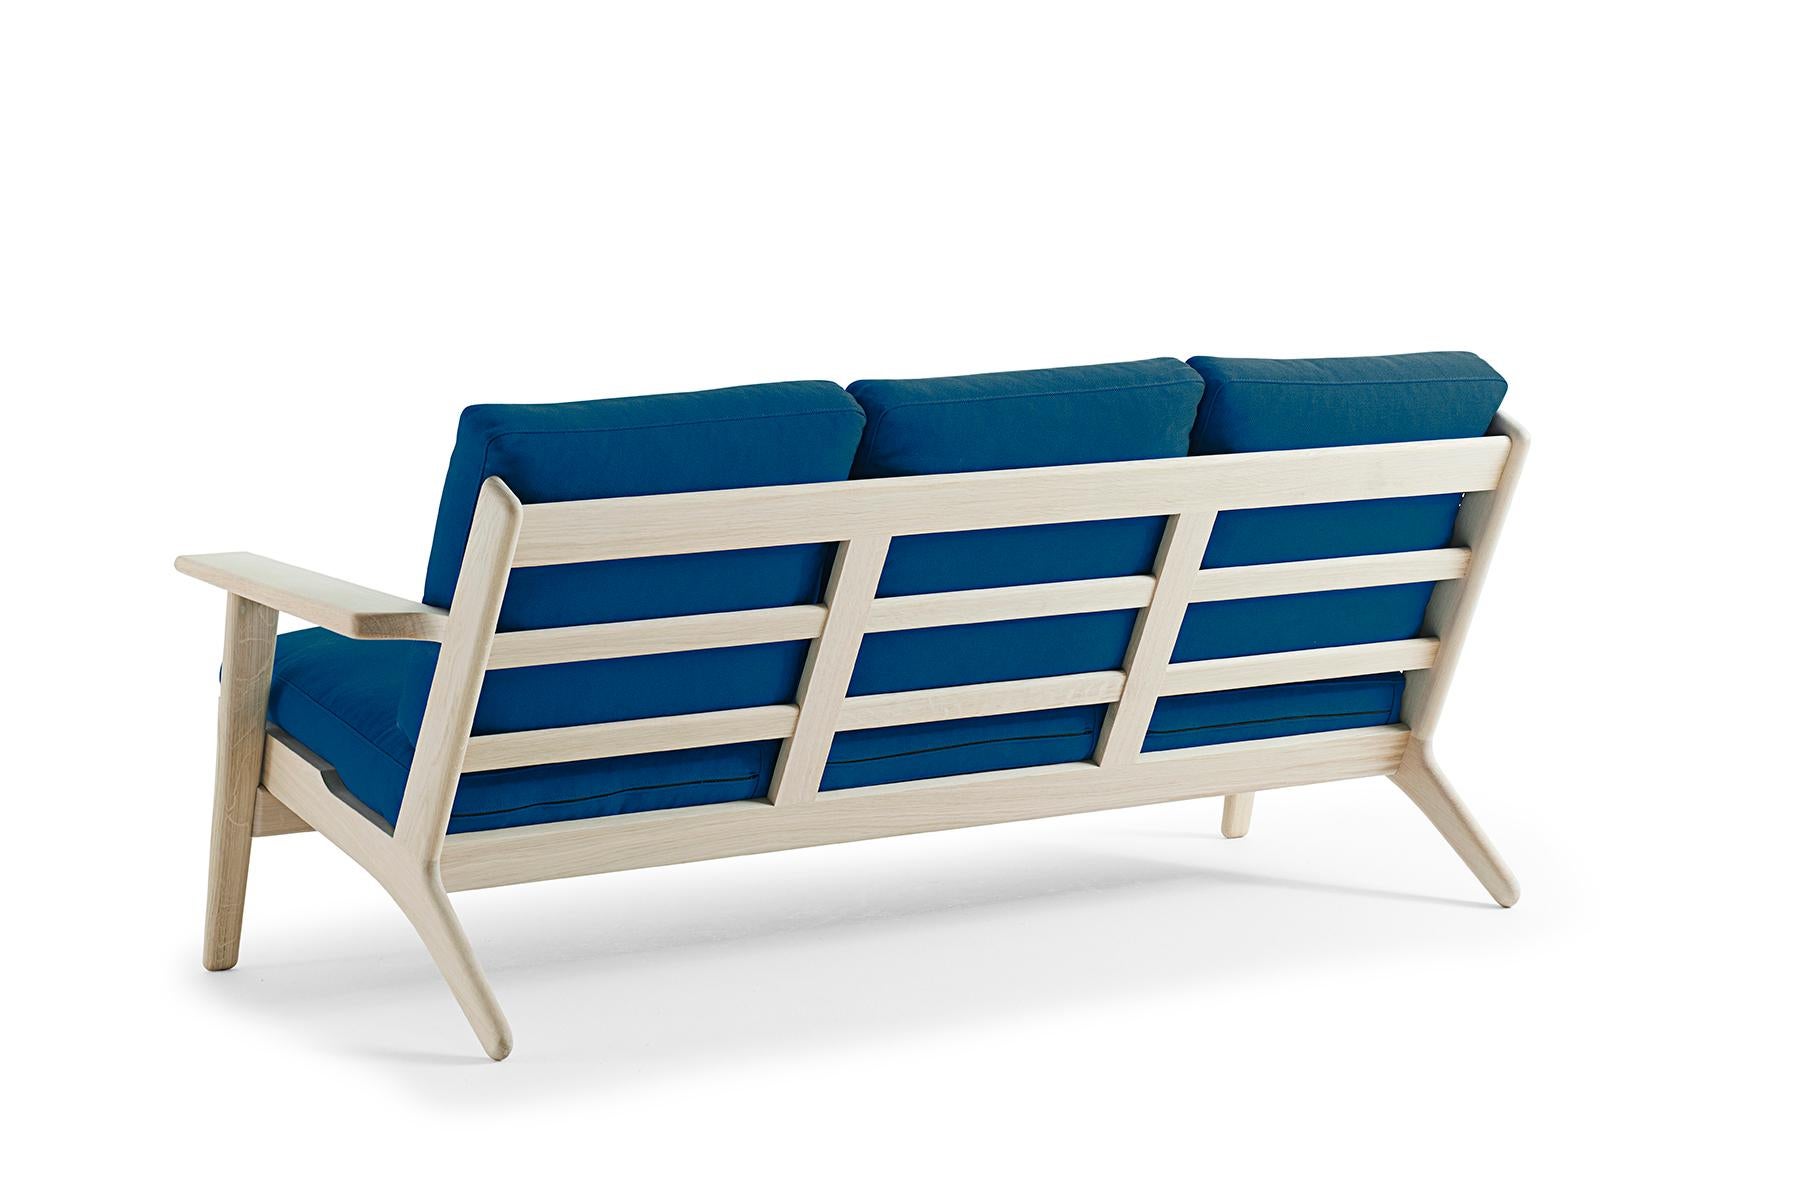 Conçue par Hans Wegner pour Getama en 1953, la GE 290/3 est la version trois places de la chaise longue 290 - l'une des œuvres classiques et les plus appréciées de l'architecte. Les grands bras à palettes sculptés mettent en valeur la beauté